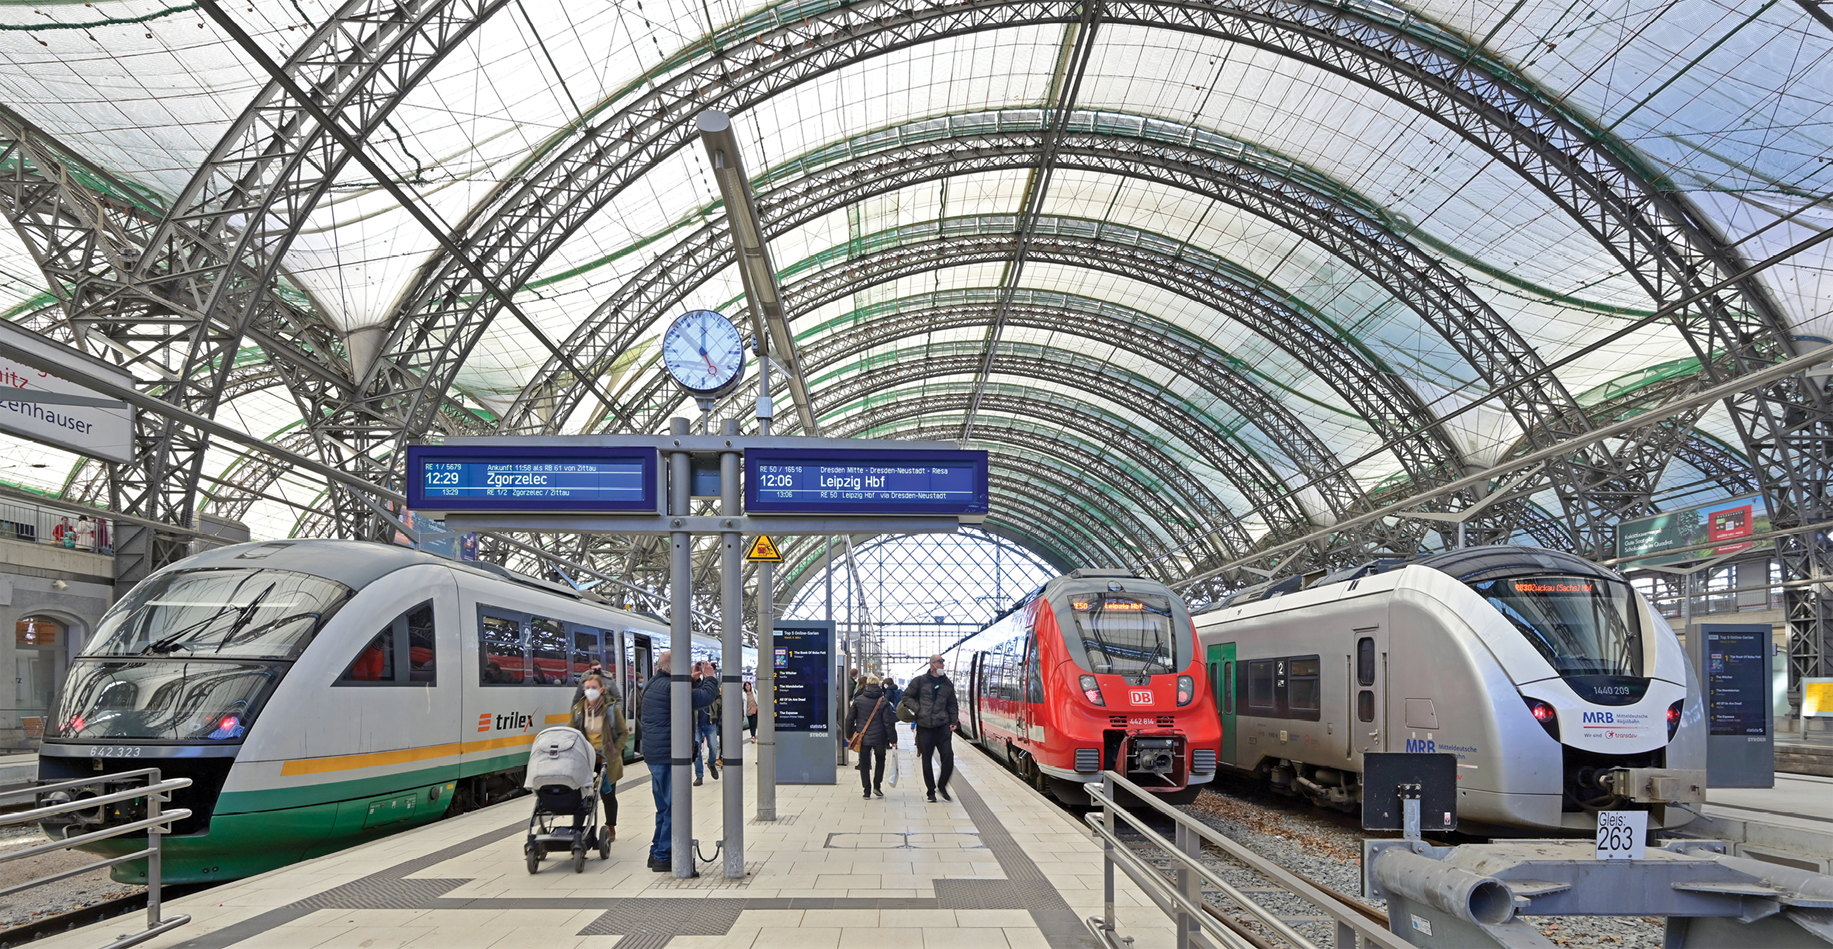 Züge verschiedener EVU im Dresdener Hauptbahnhof: Ein Ergebnis der Bahnreform war die Öffnung des Marktes für den Wettbewerb